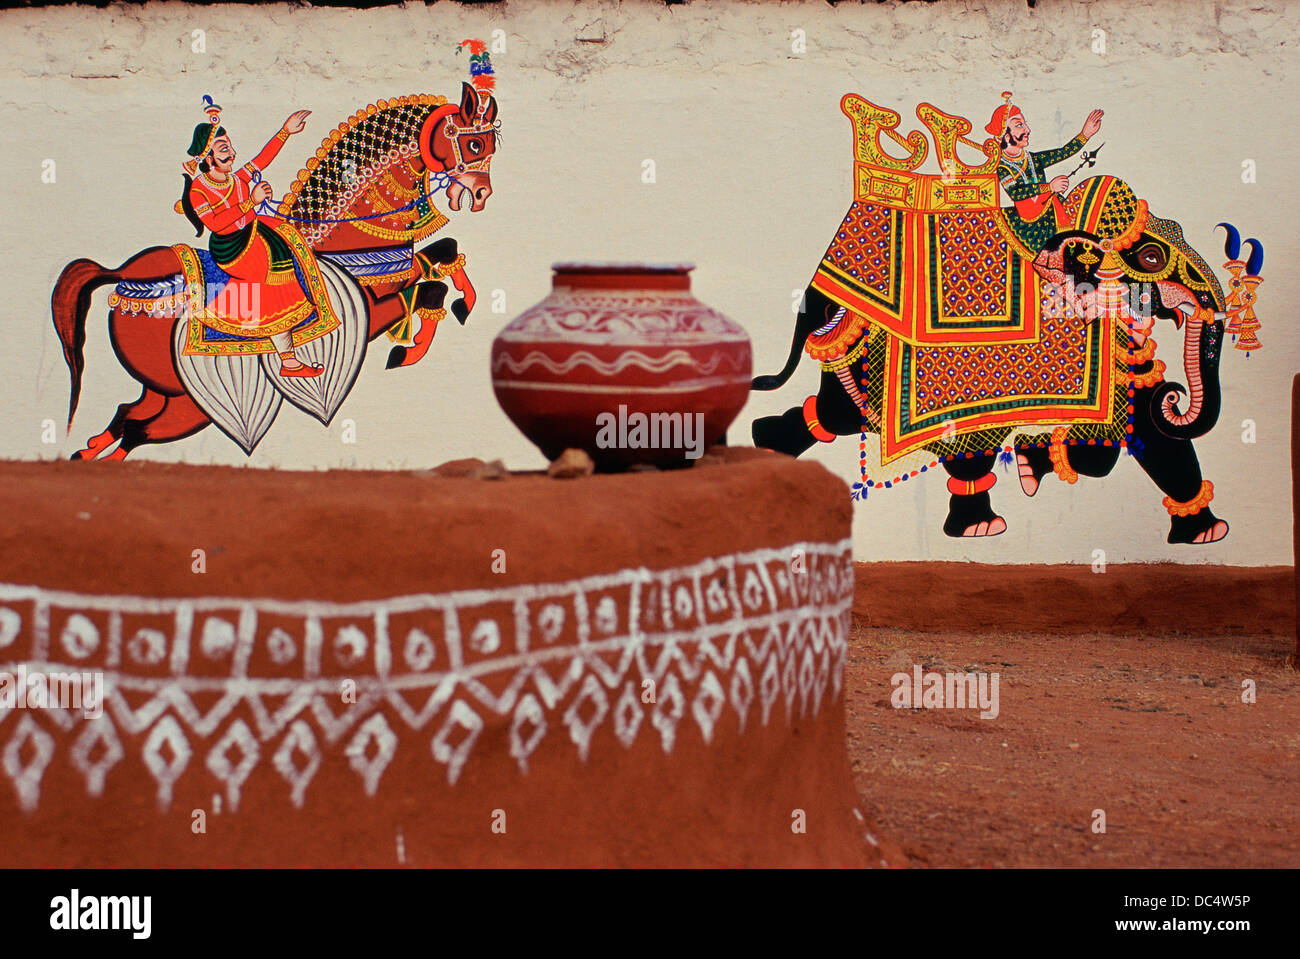 Wandmalerei, ein Rajput-Reiter und einem reich geschmückten Elefanten darstellen. Im Vordergrund, einen bemalten Krug (Indien) Stockfoto